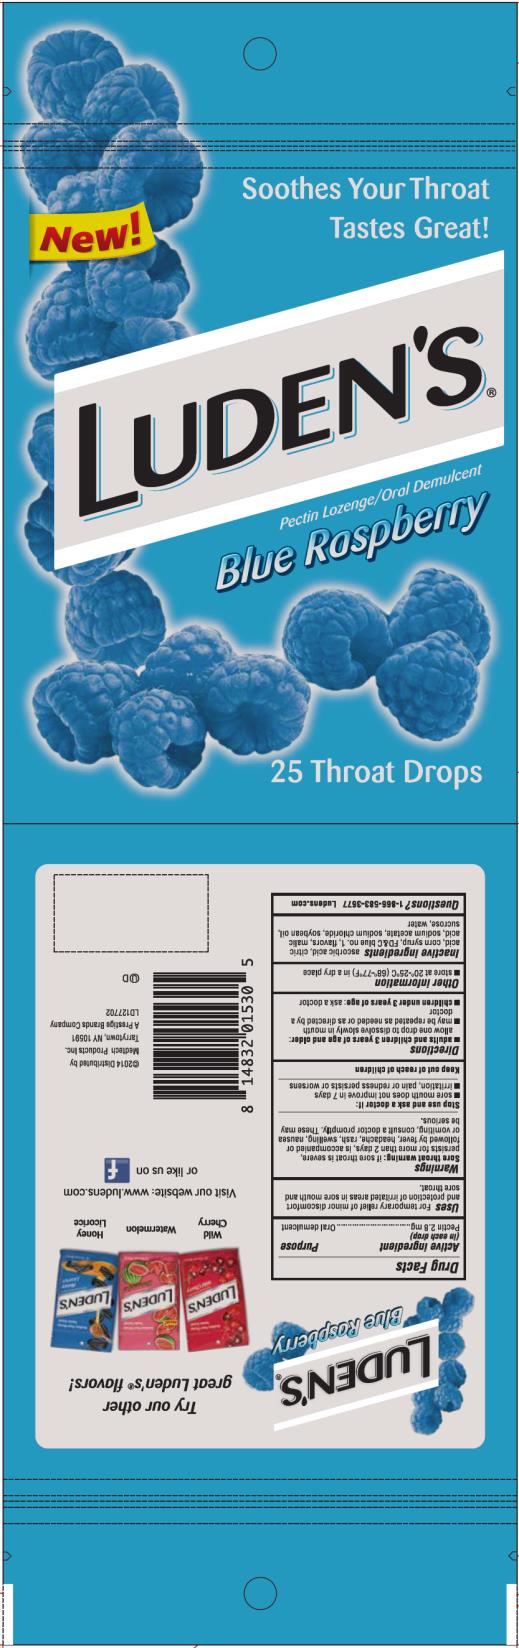 Luden’s
Pectin Lozenge/Oral Demulcent 
Blue Raspberry
25 Throat Drops
